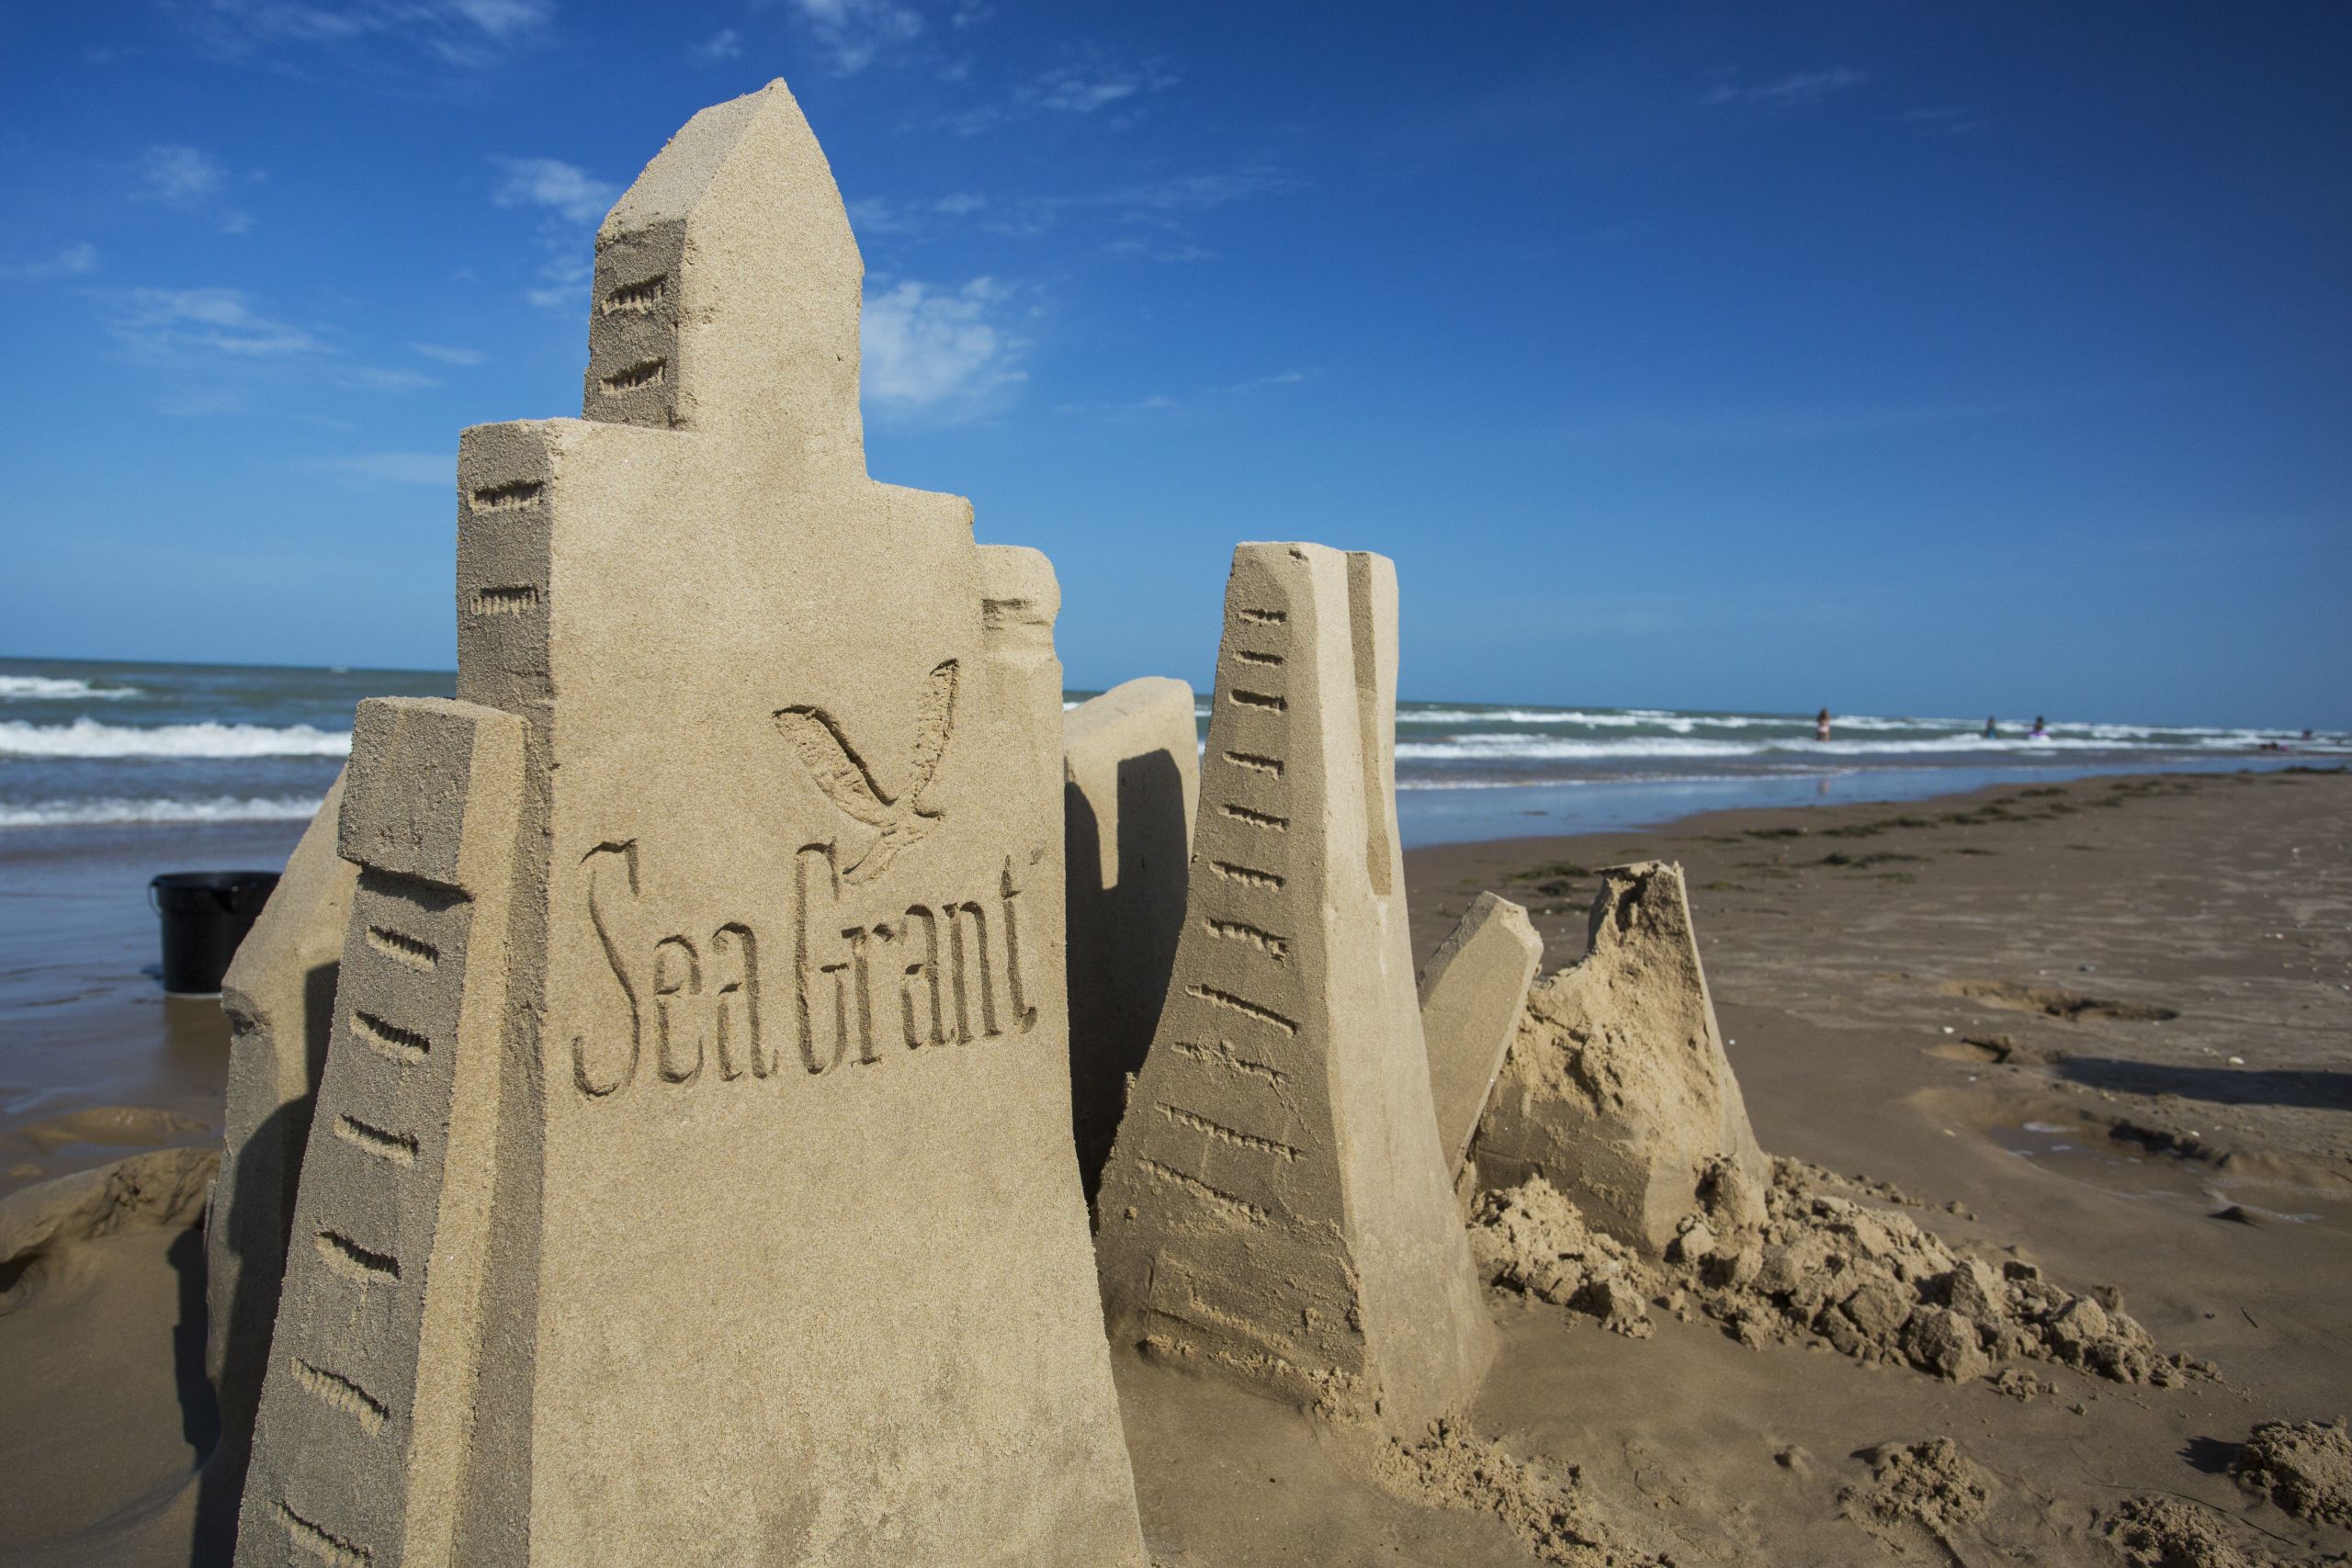 sea grant sand castle